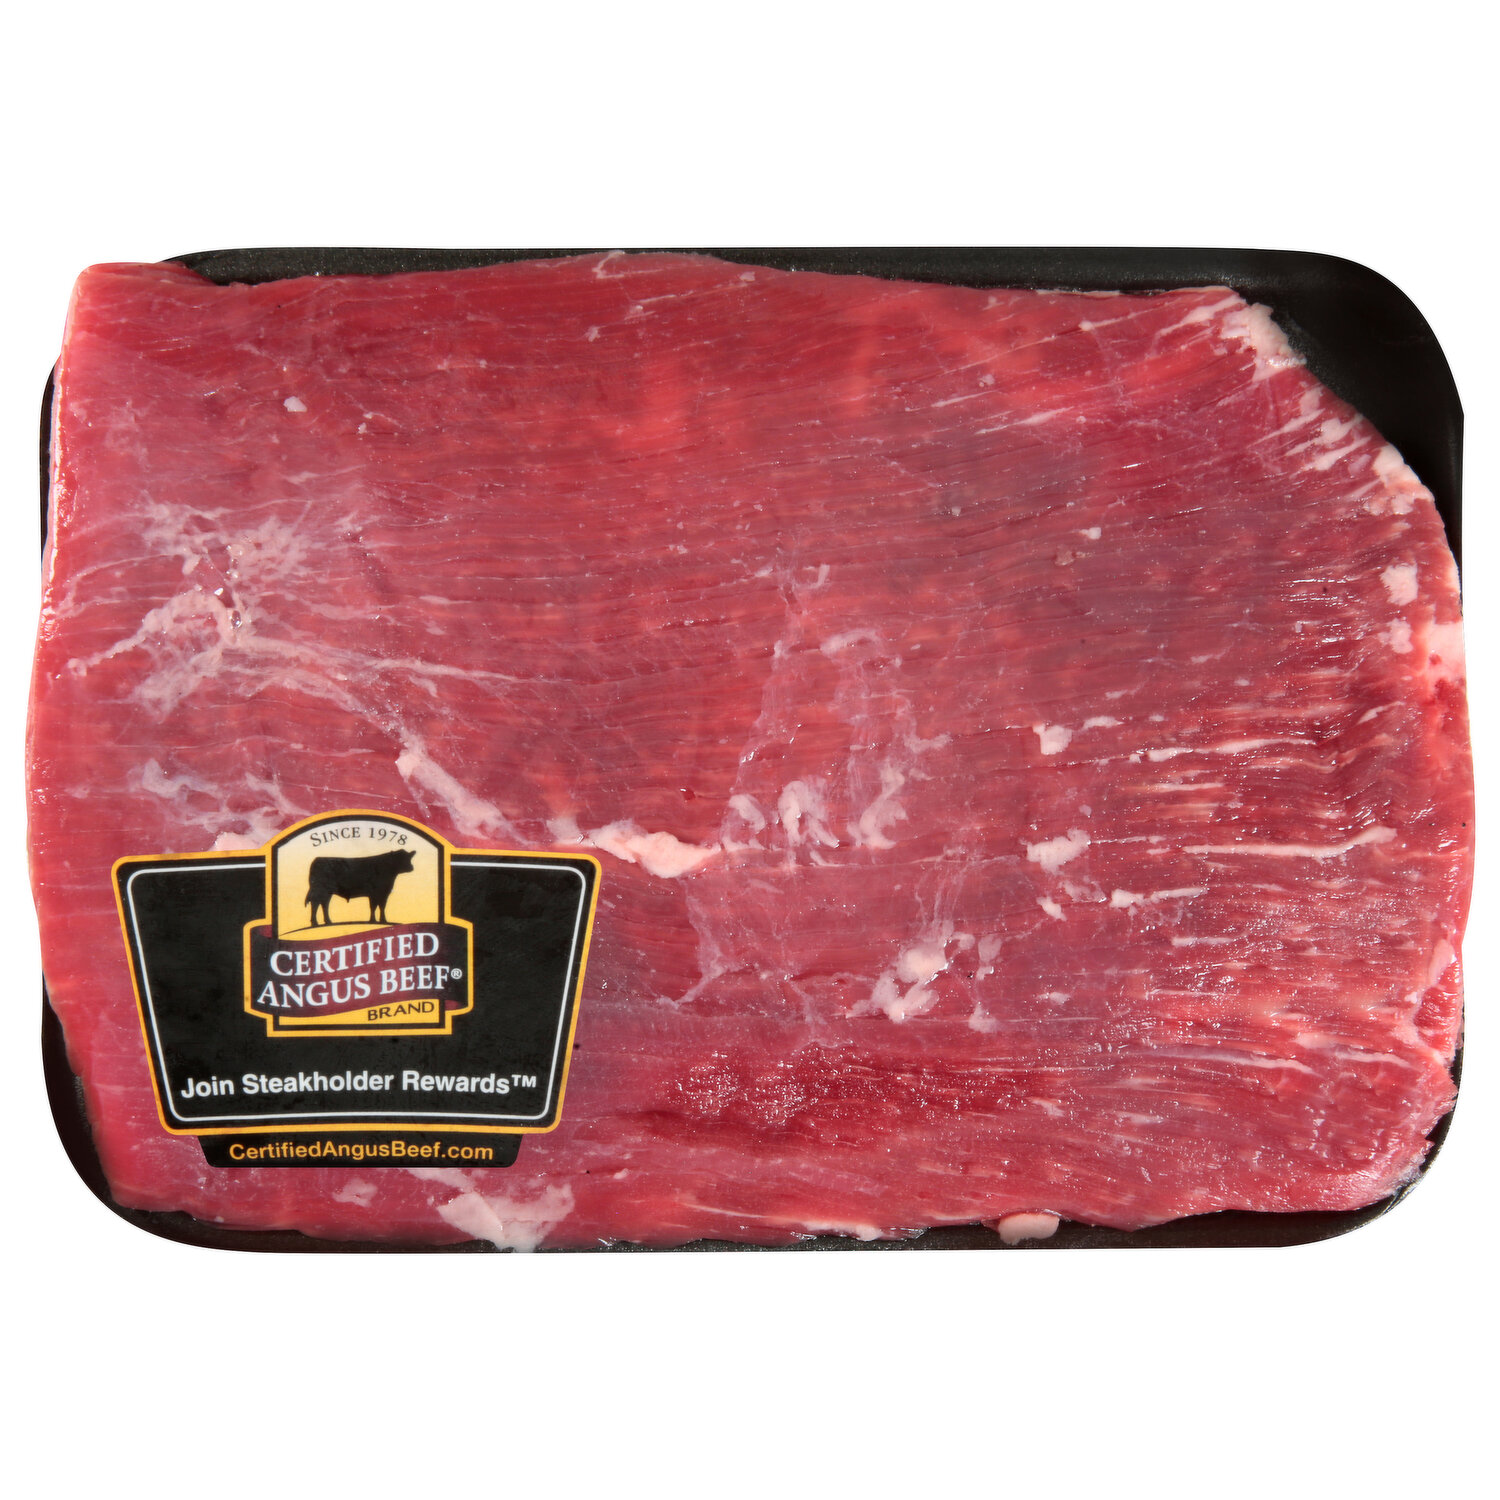 Flank Steak, USDA Boneless, (5 Lb. Avg)